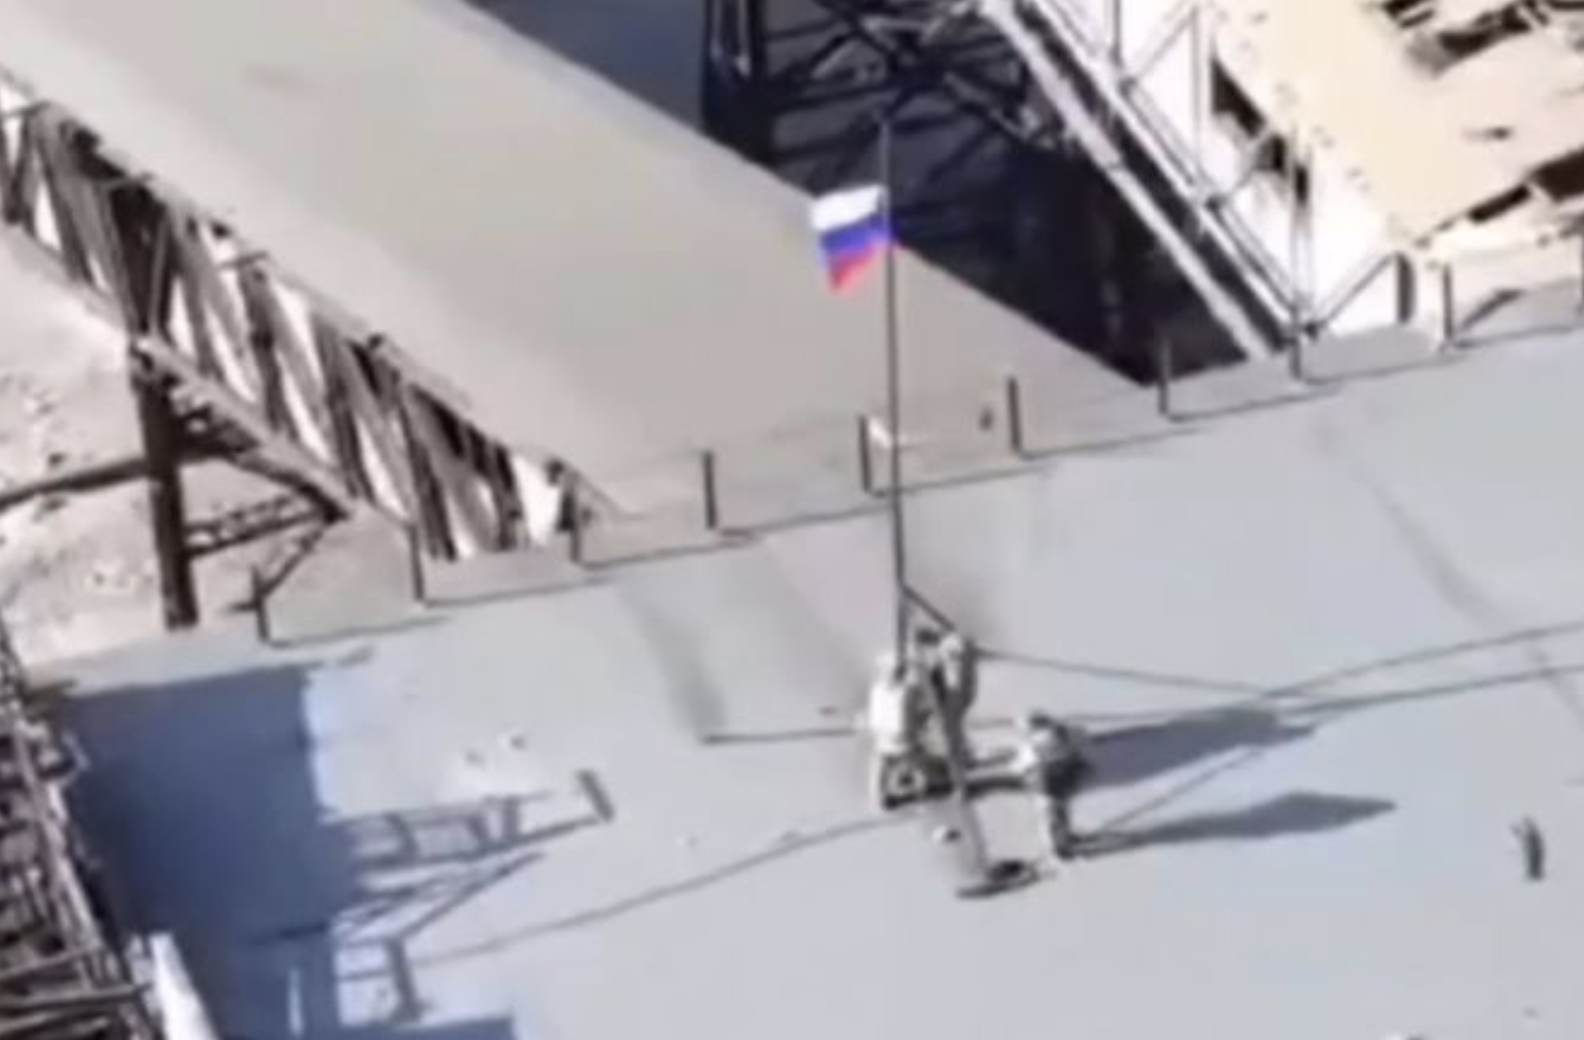 ▲阿夫杰耶夫升起了俄罗斯国旗 视频截图